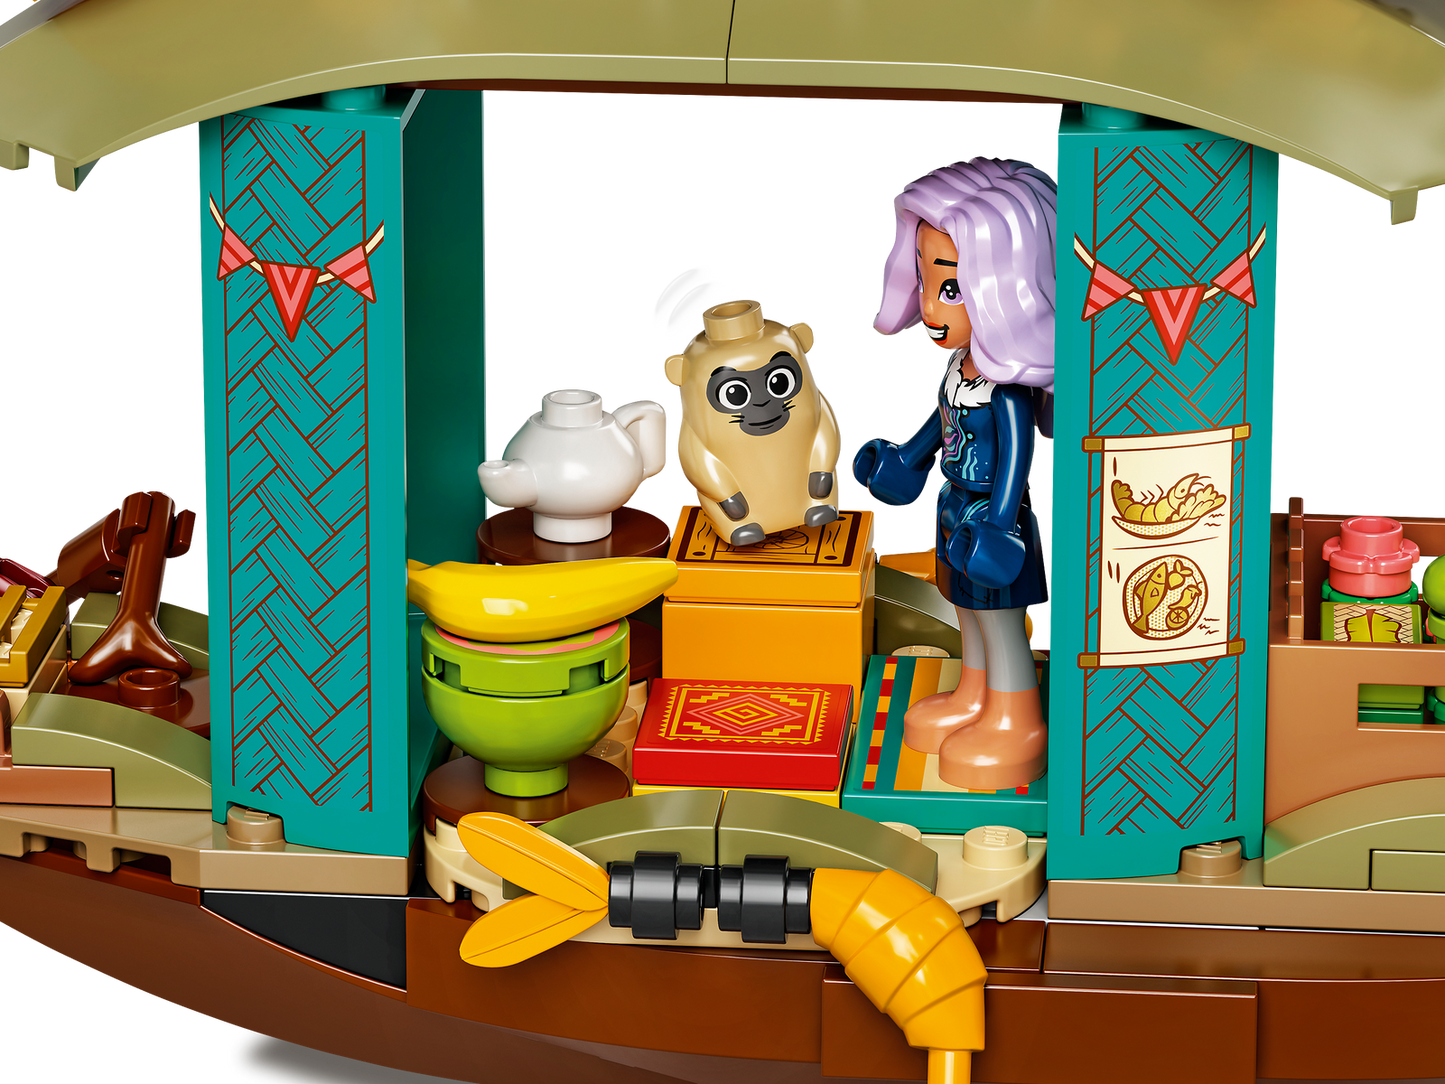 LEGO Disney Raya Boun's Boat 43185